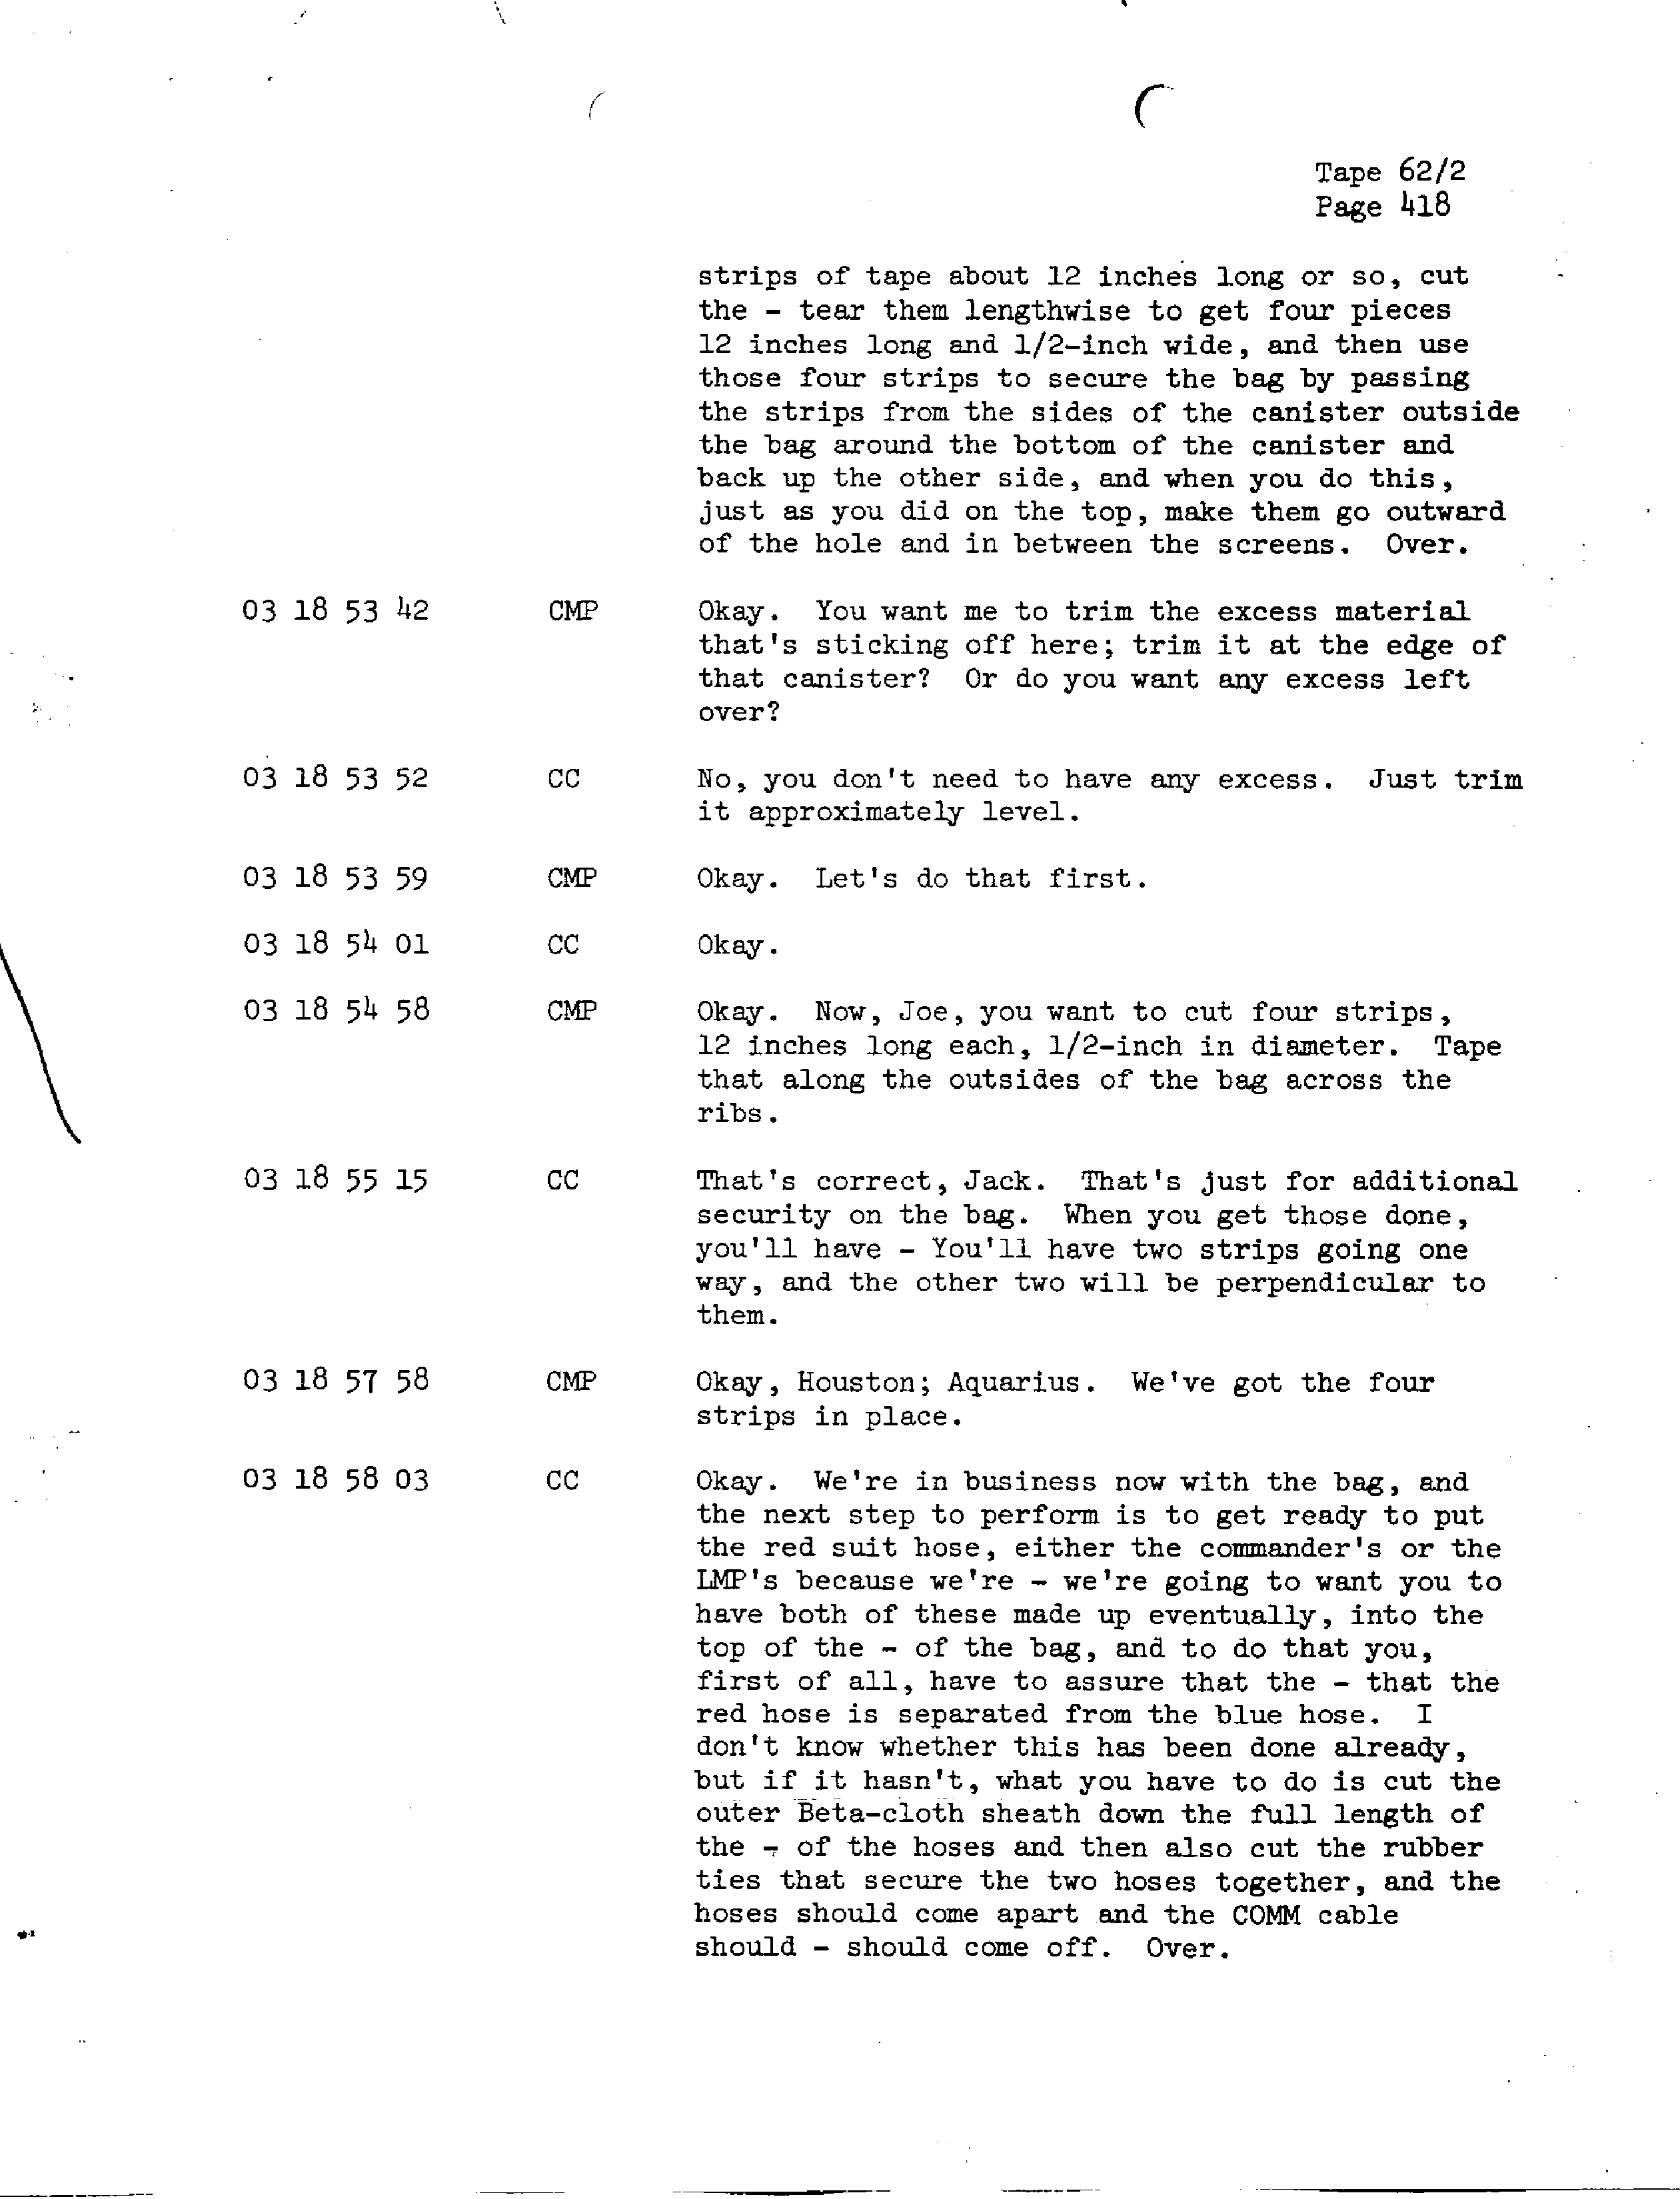 Page 425 of Apollo 13’s original transcript